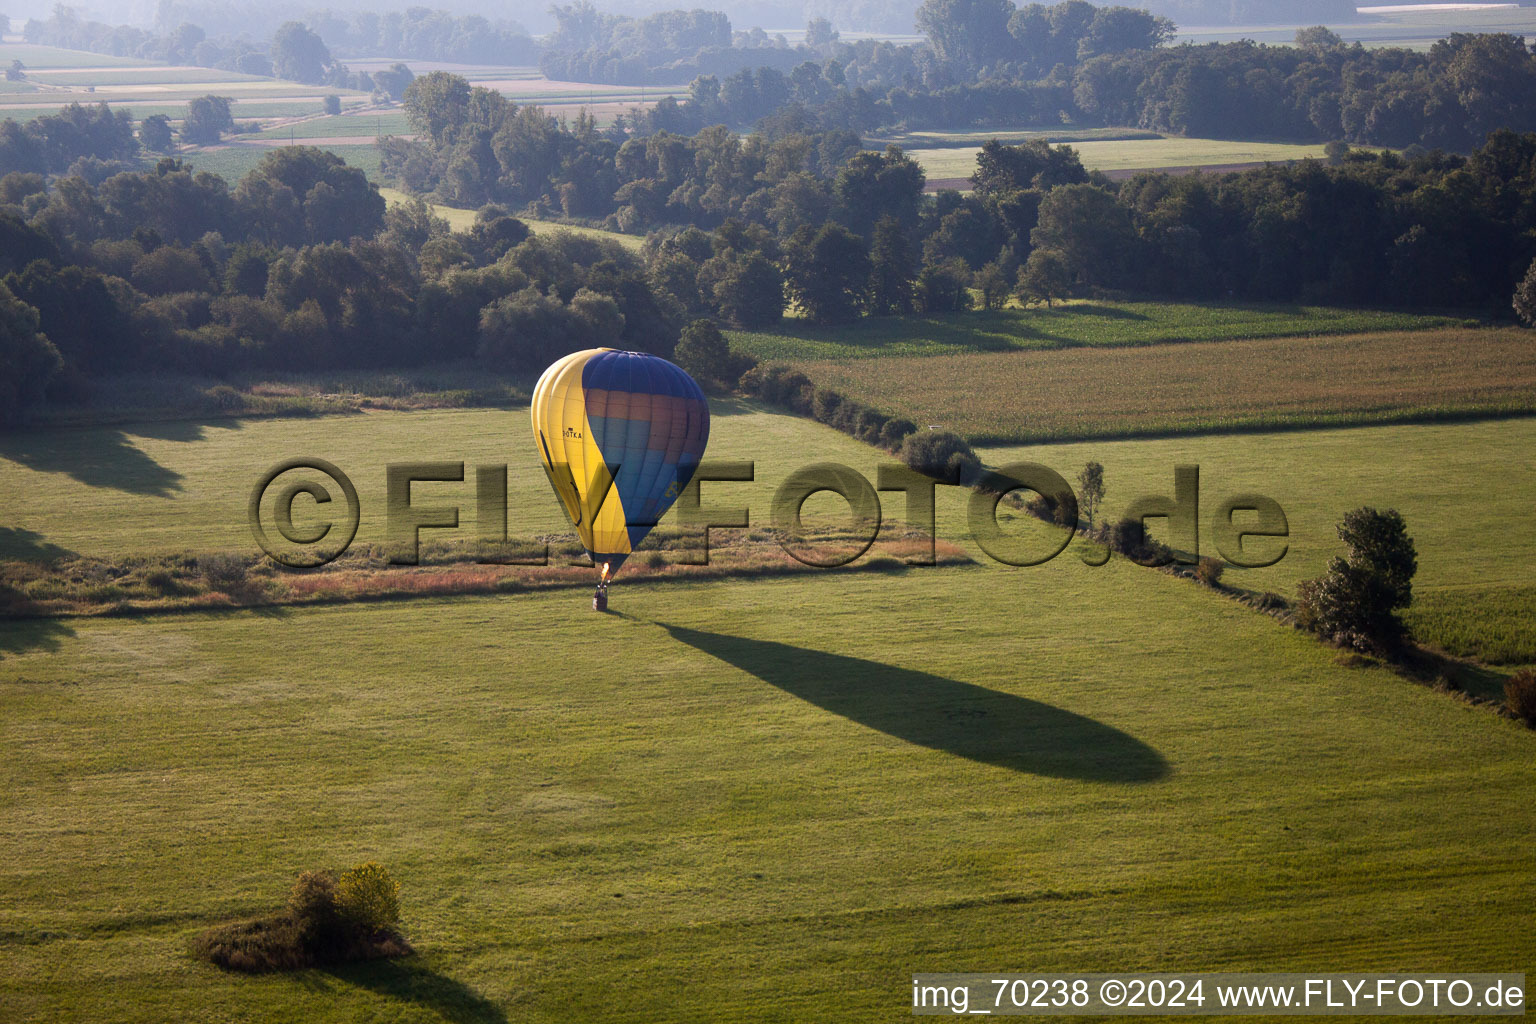 Luftbild von Ballon auf der Flucht in Erlenbach bei Kandel im Bundesland Rheinland-Pfalz, Deutschland